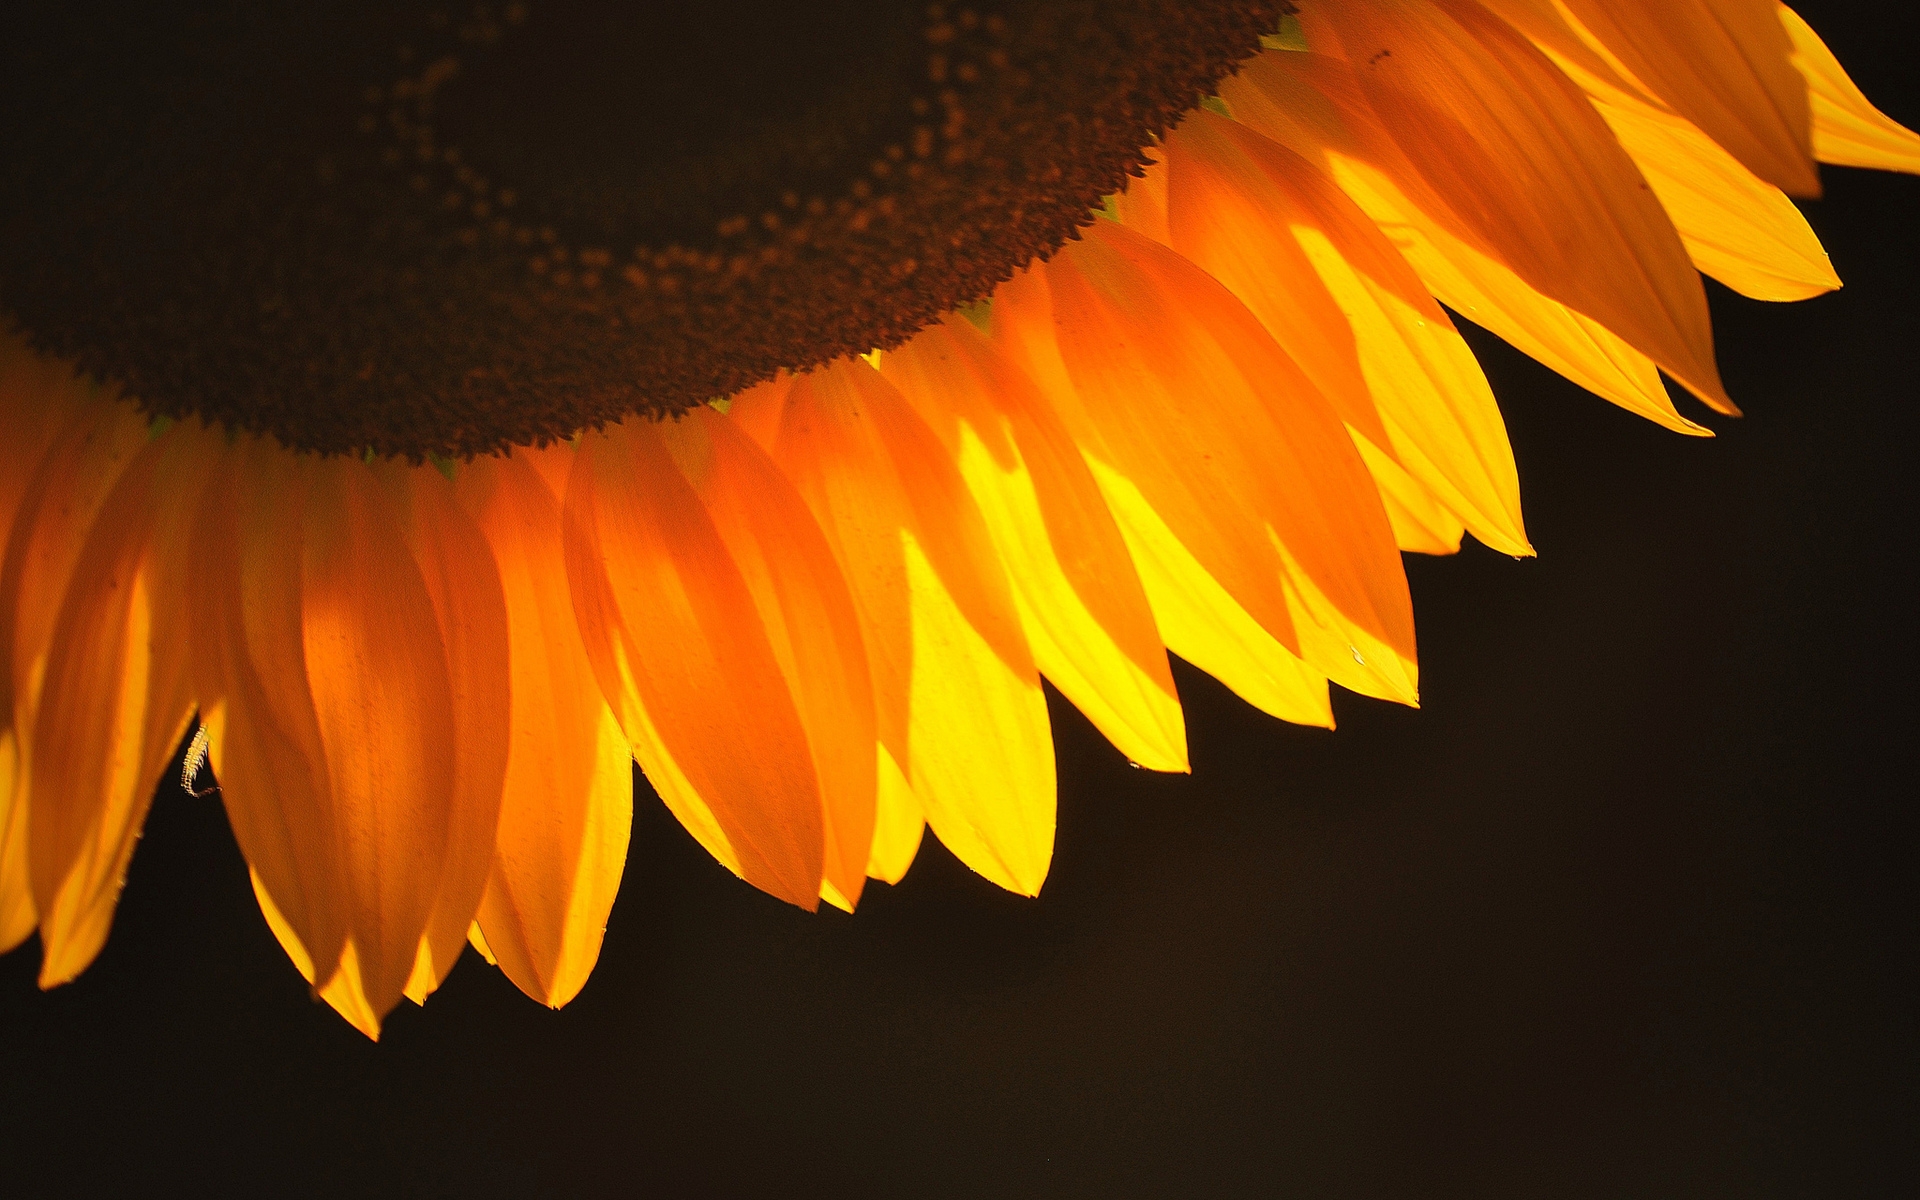 Sunflower Petals for 1920 x 1200 widescreen resolution